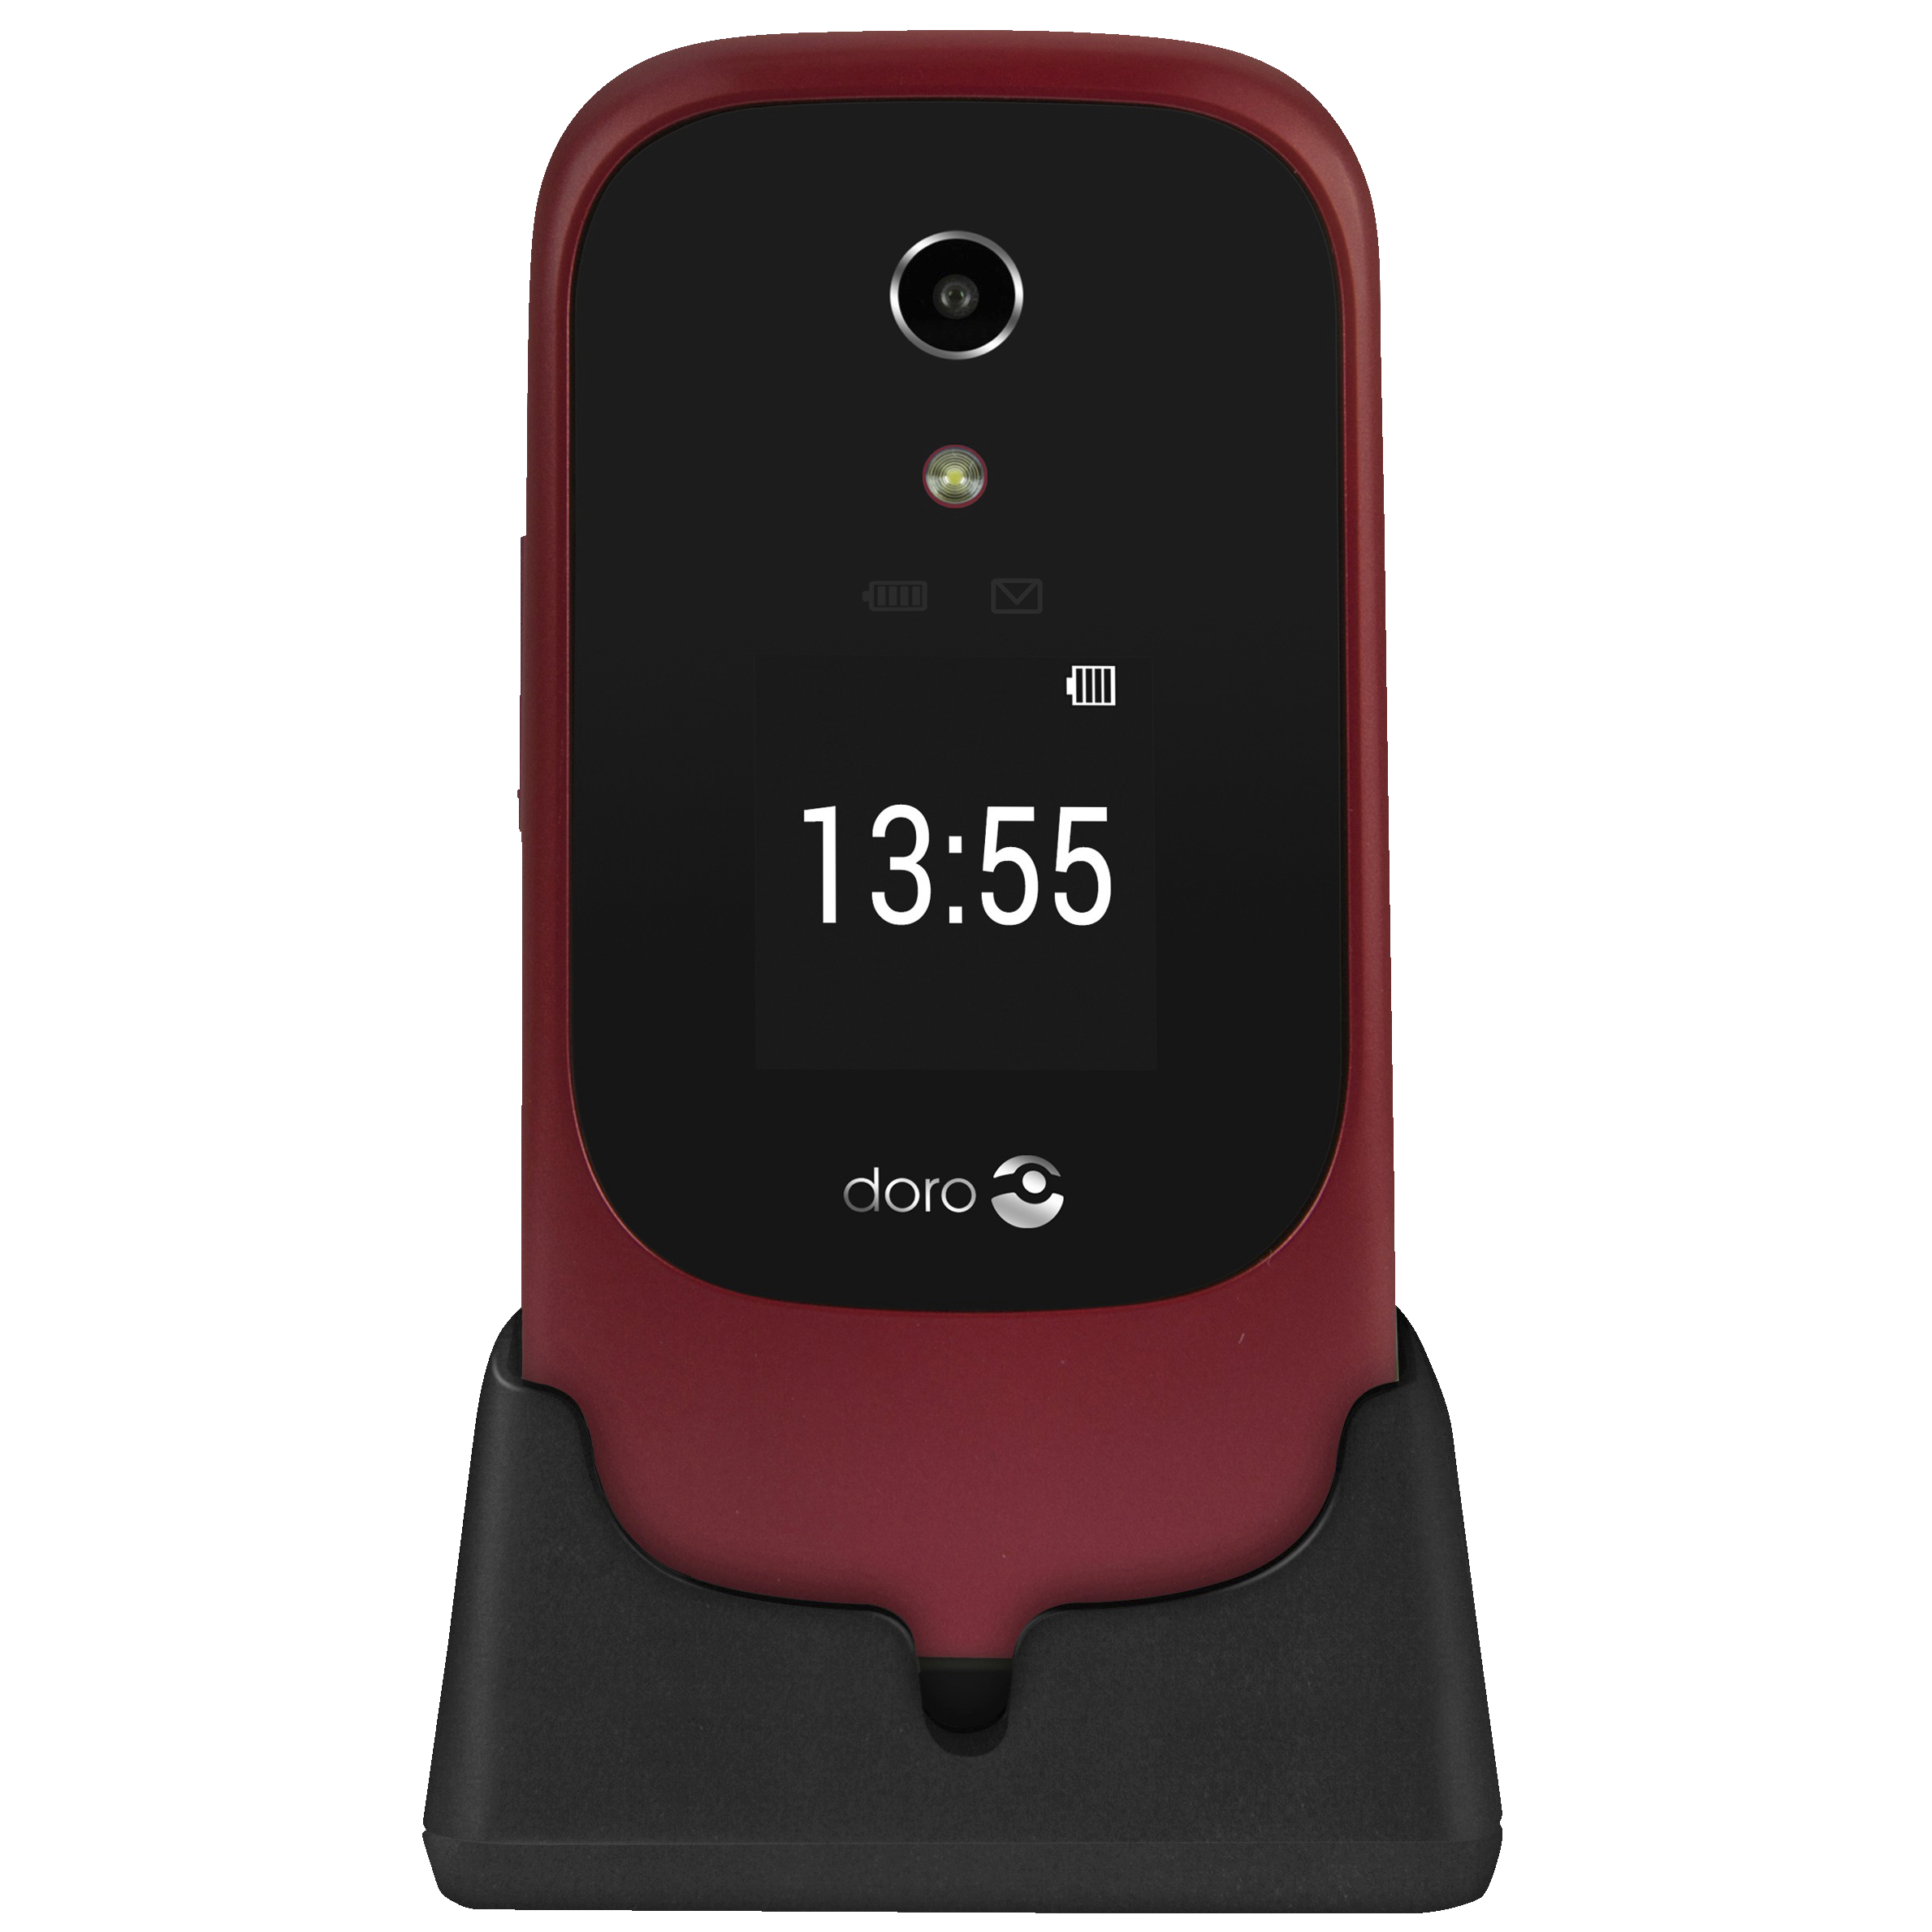 Doro 7070 mobiltelefon (rød) - Mobiltelefoner - Elgiganten